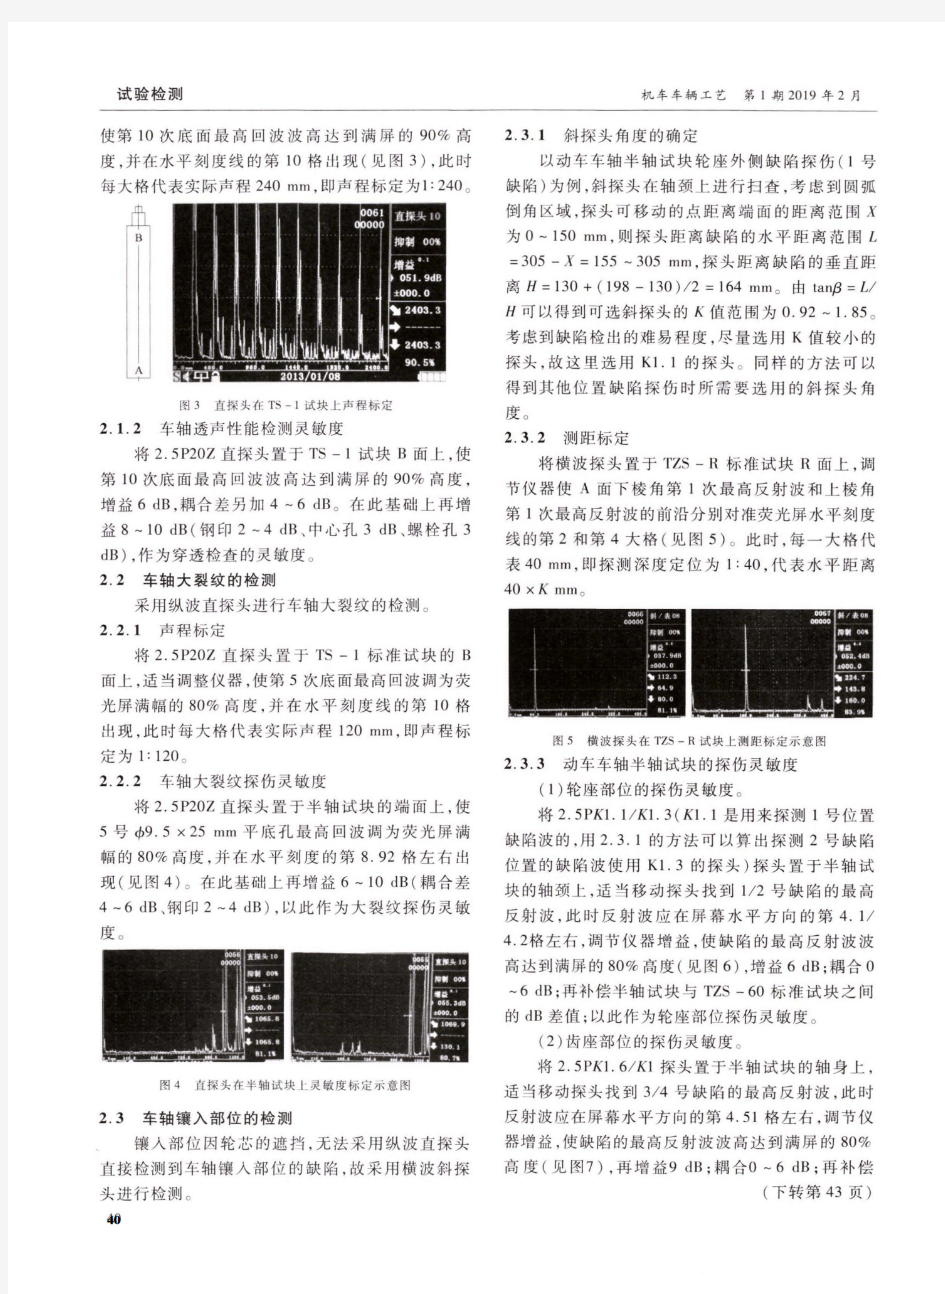 上海地铁3号线车轴超声波检测方案研究